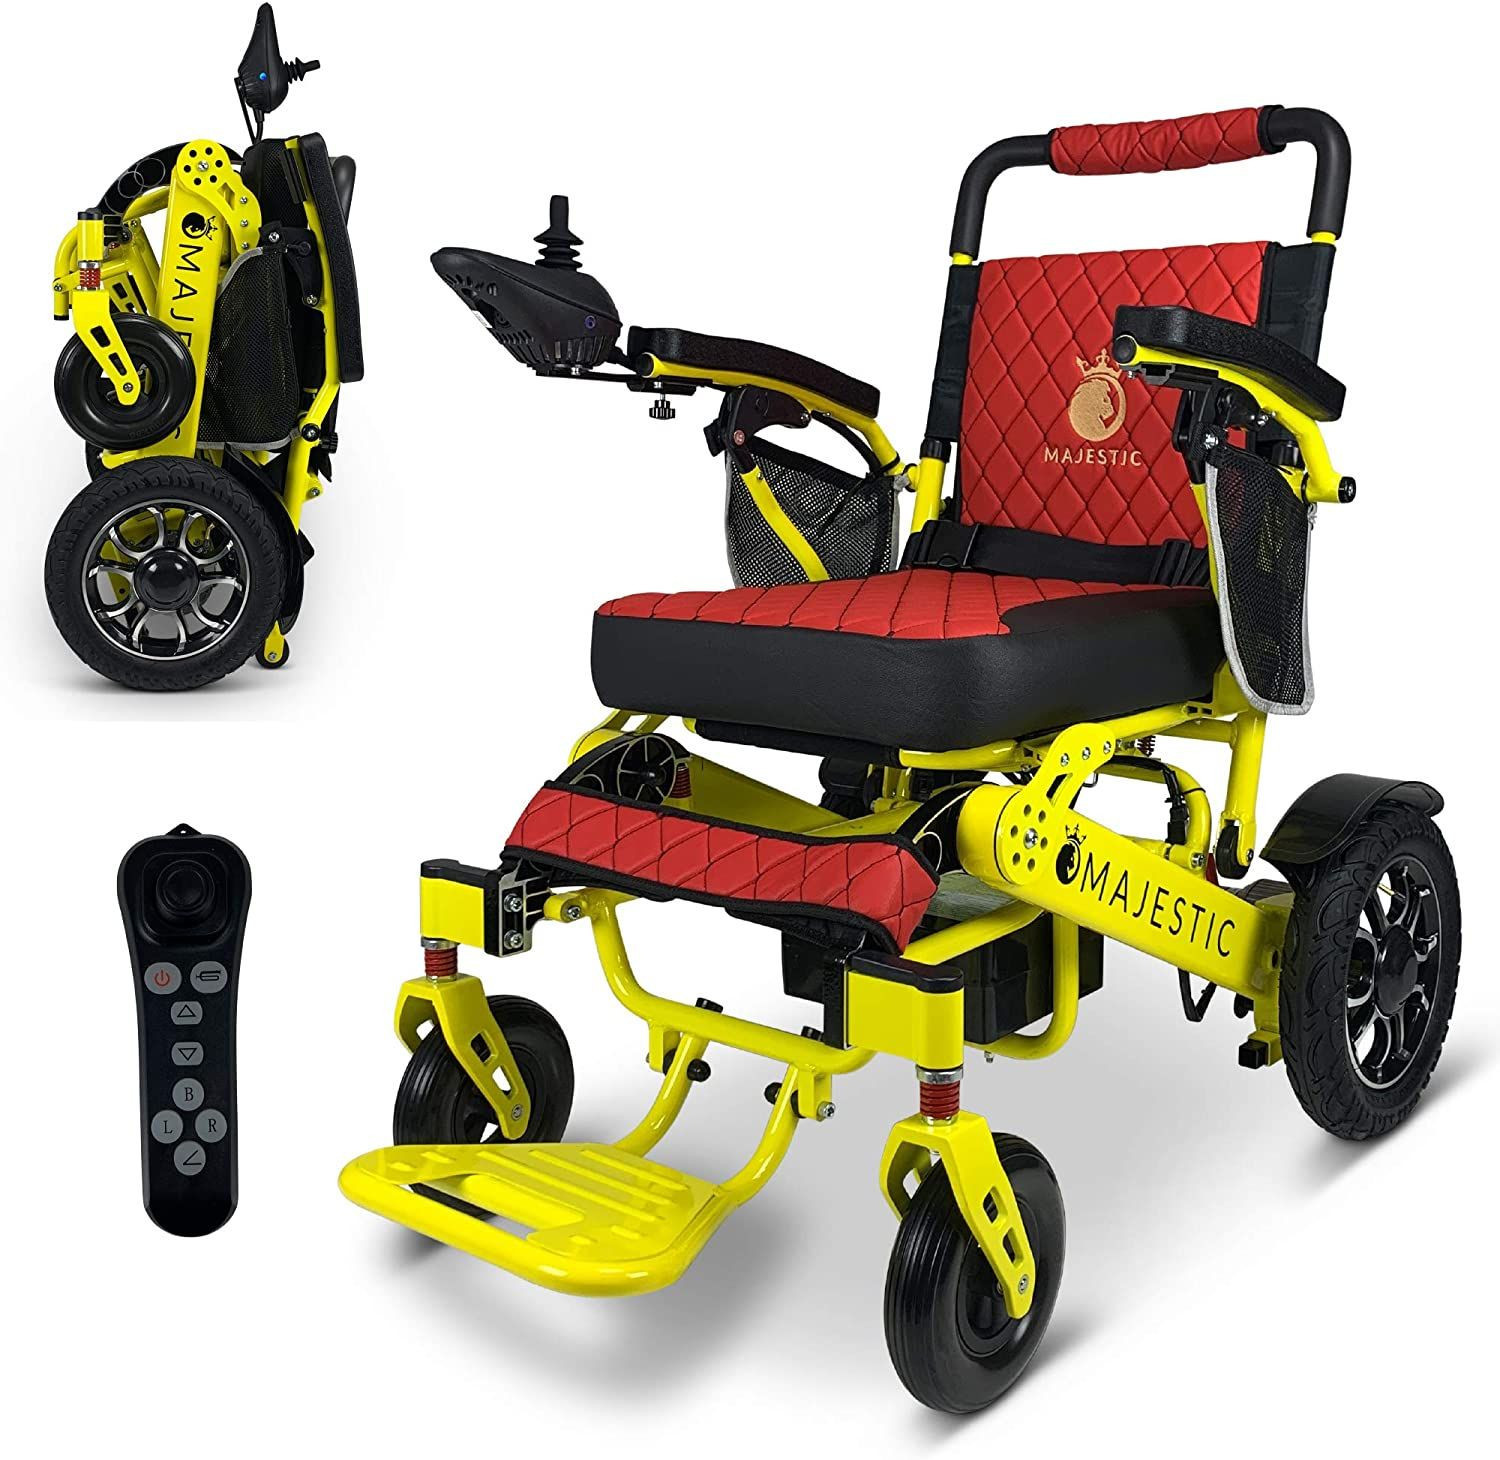 2020限量版遥控折叠电动轮椅移动辅助轻型电动轮椅